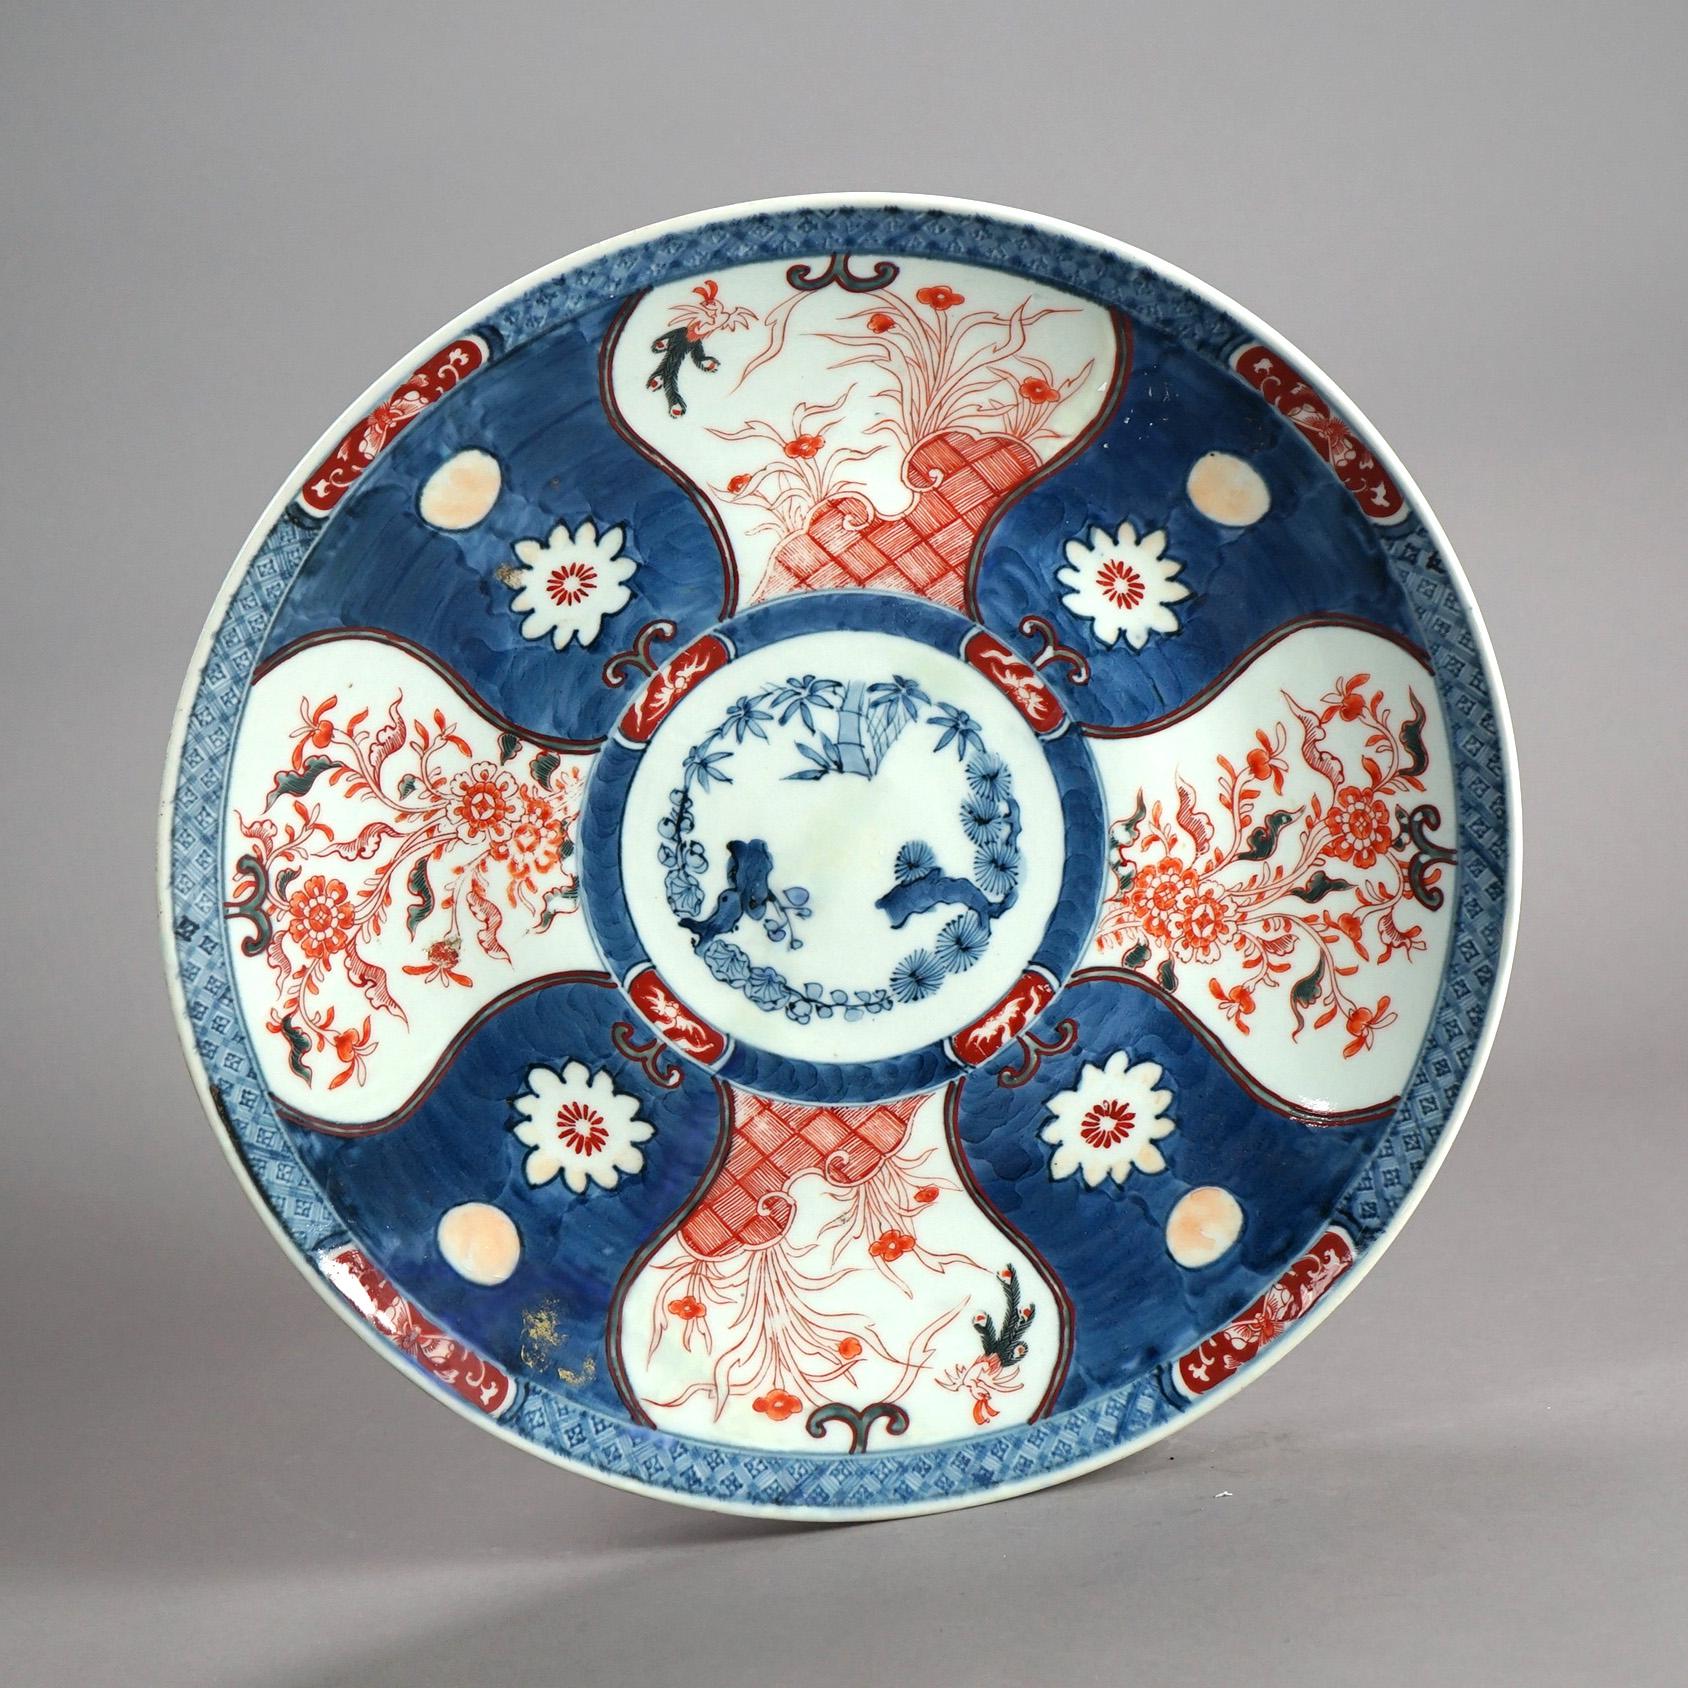 Un ancien chargeur japonais Imari en porcelaine avec des réserves de jardin peintes à la main et un motif floral en verso avec le cachet central du fabricant, vers 1920

Mesures- 2.25''H x 18.5''W x 18.5''D